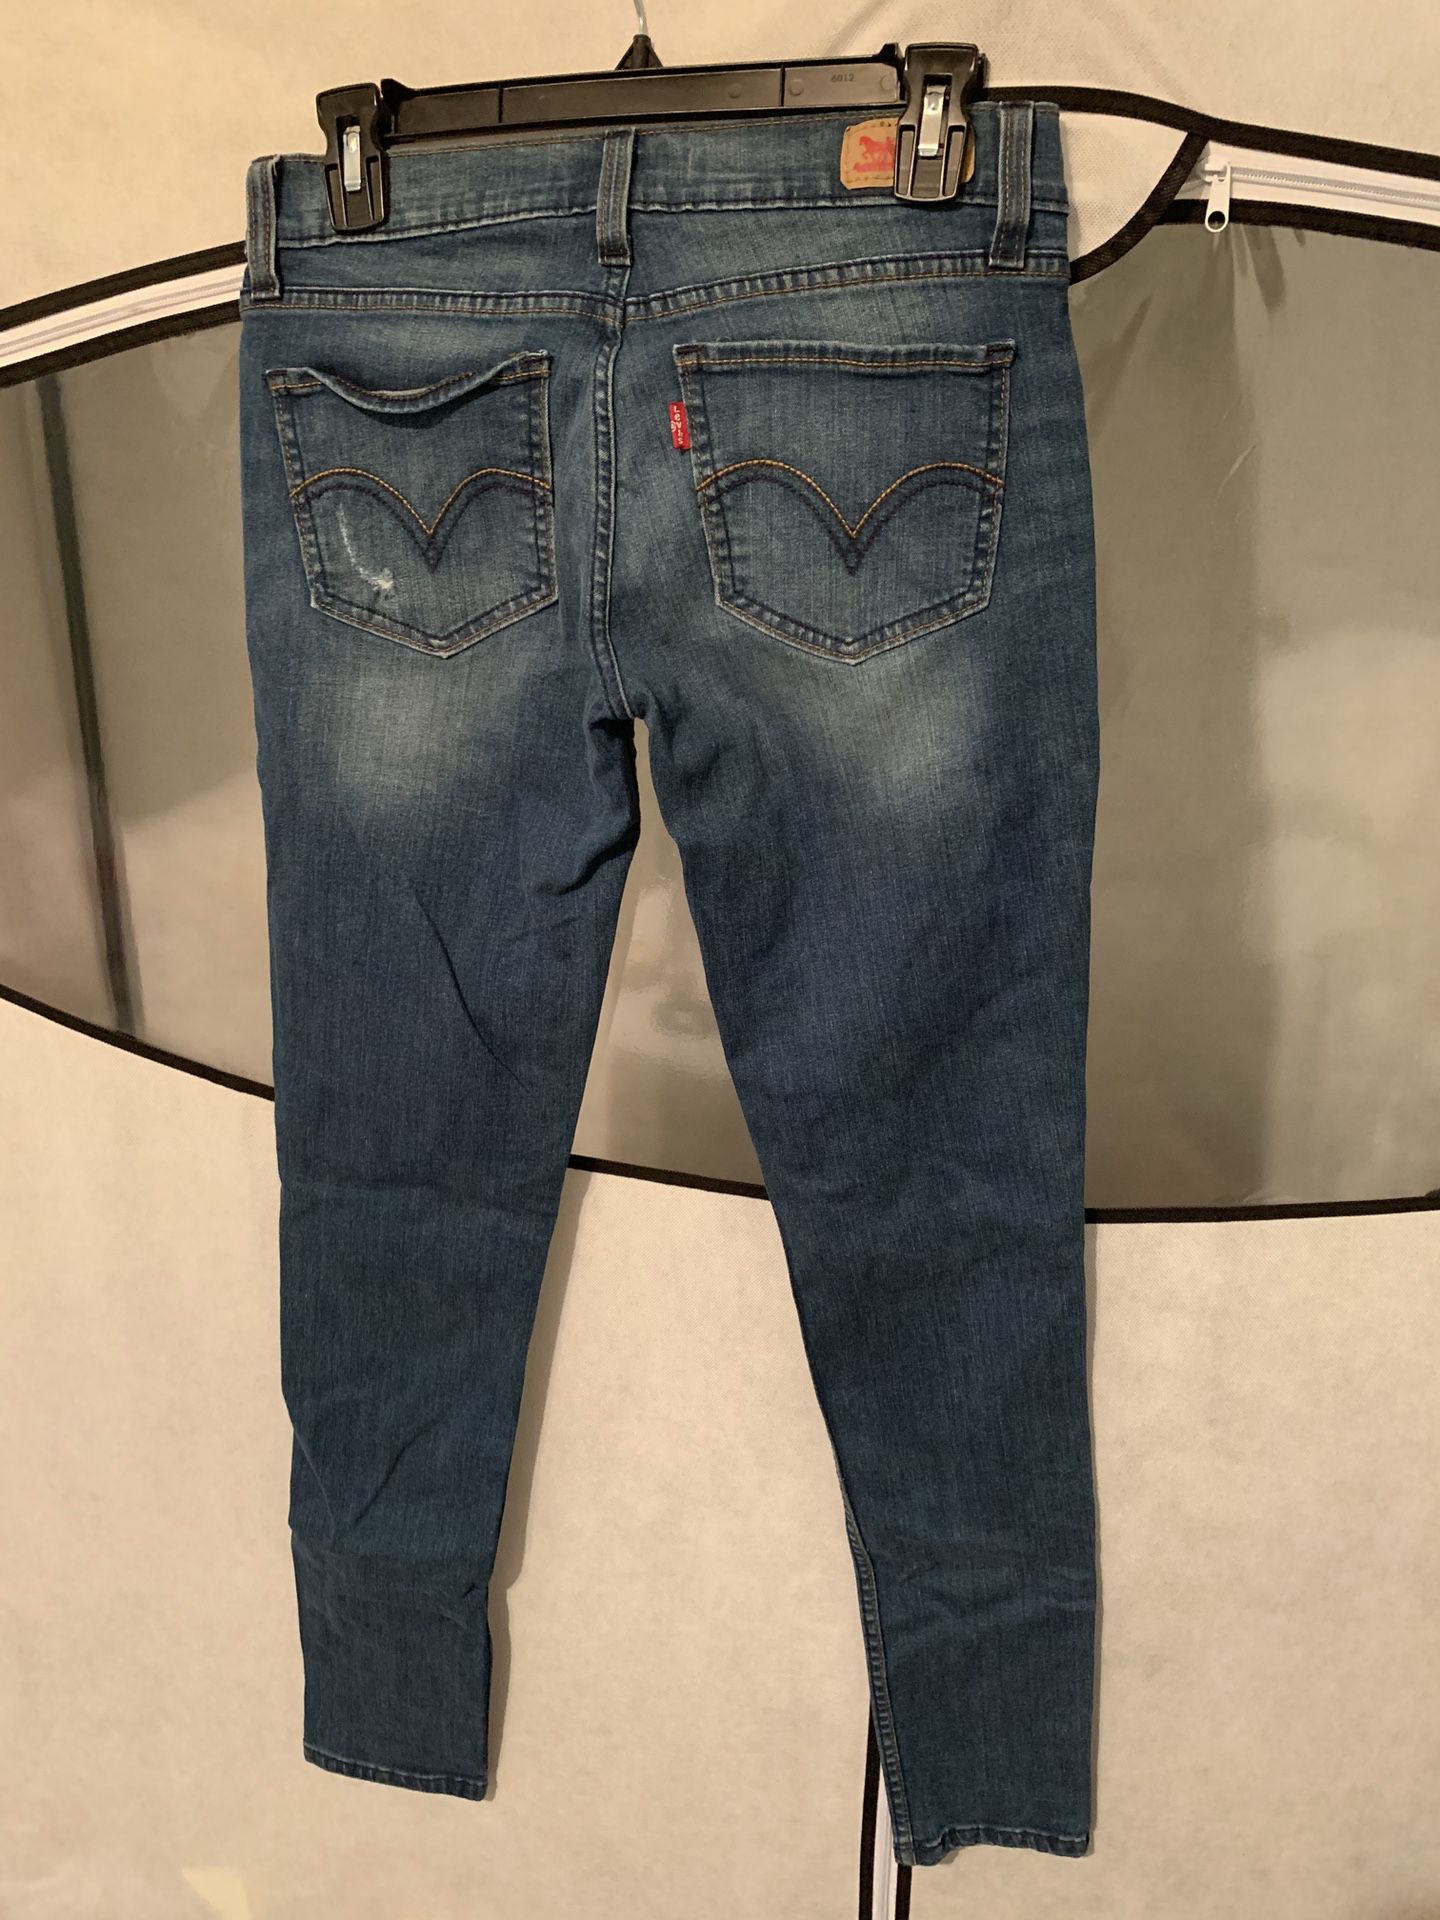 Levi Jeans Size 27x32